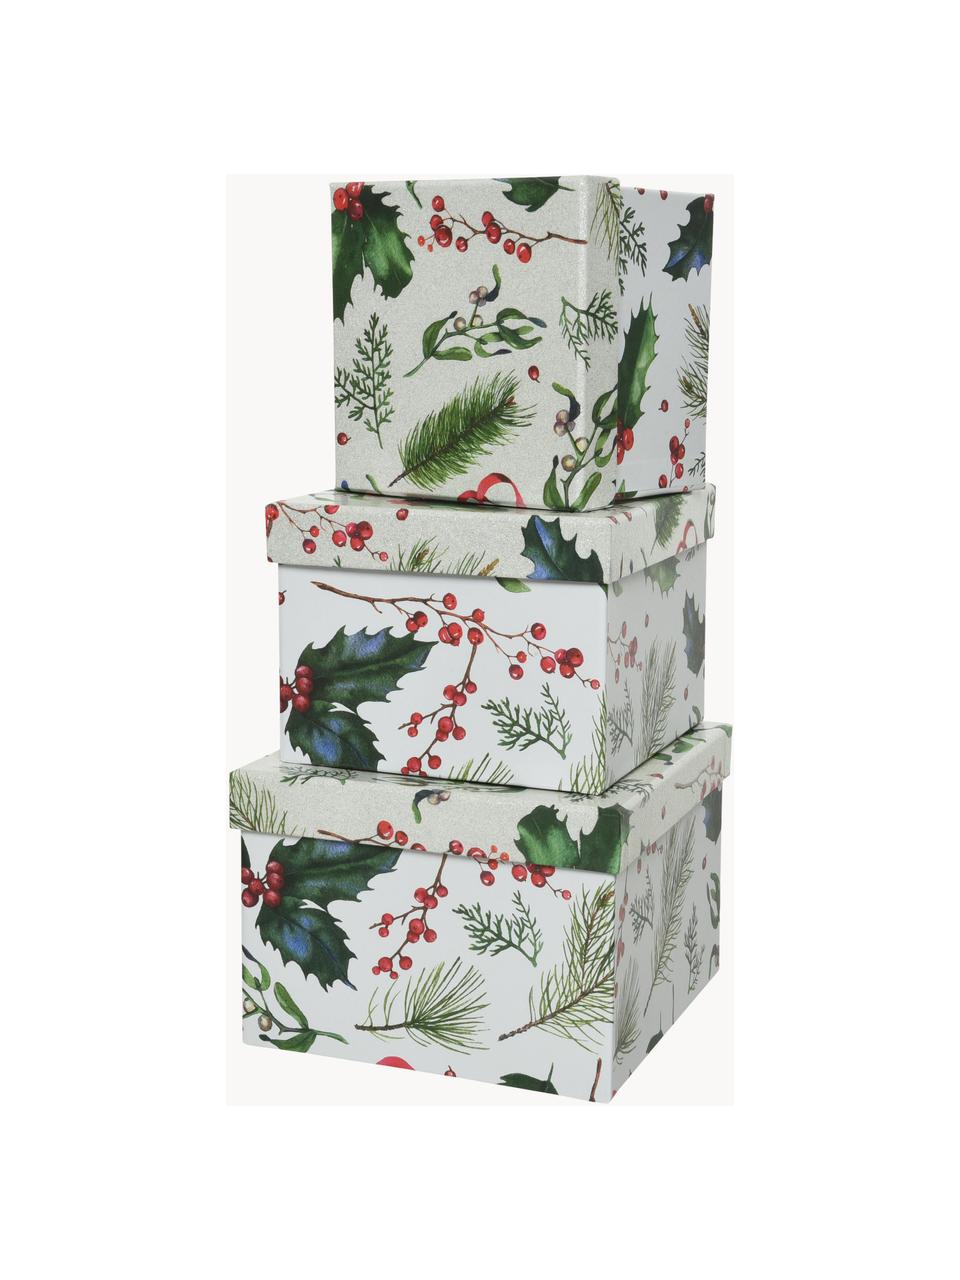 Súprava darčekových škatuliek Mistletoe, 3 diely, Papier, Biela, zelená, červená, Súprava s rôznymi veľkosťami